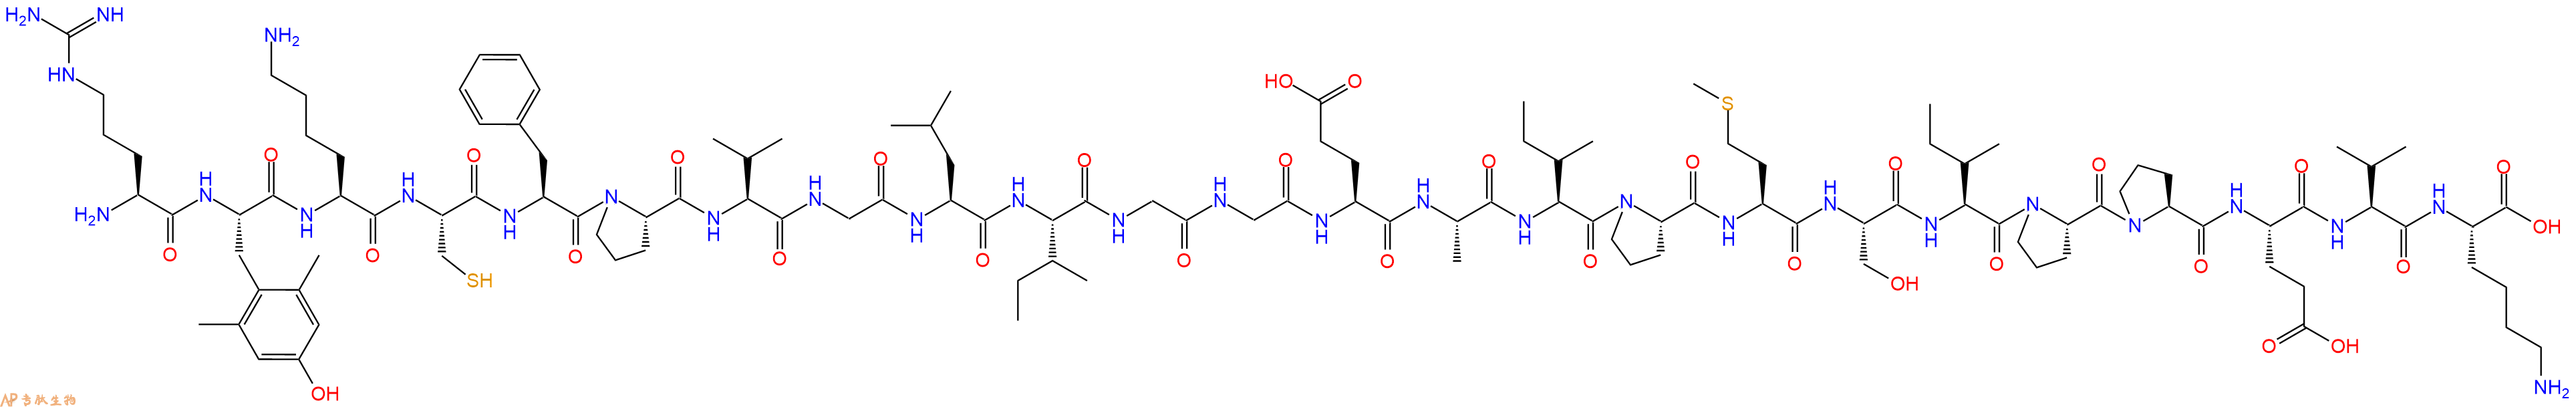 专肽生物产品H2N-Arg-Dmt-Lys-Cys-Phe-Pro-Val-Gly-Leu-Ile-Gly-Gly-Glu-Ala-Ile-Pro-Met-Ser-Ile-Pro-Pro-Glu-Val-Lys-COOH